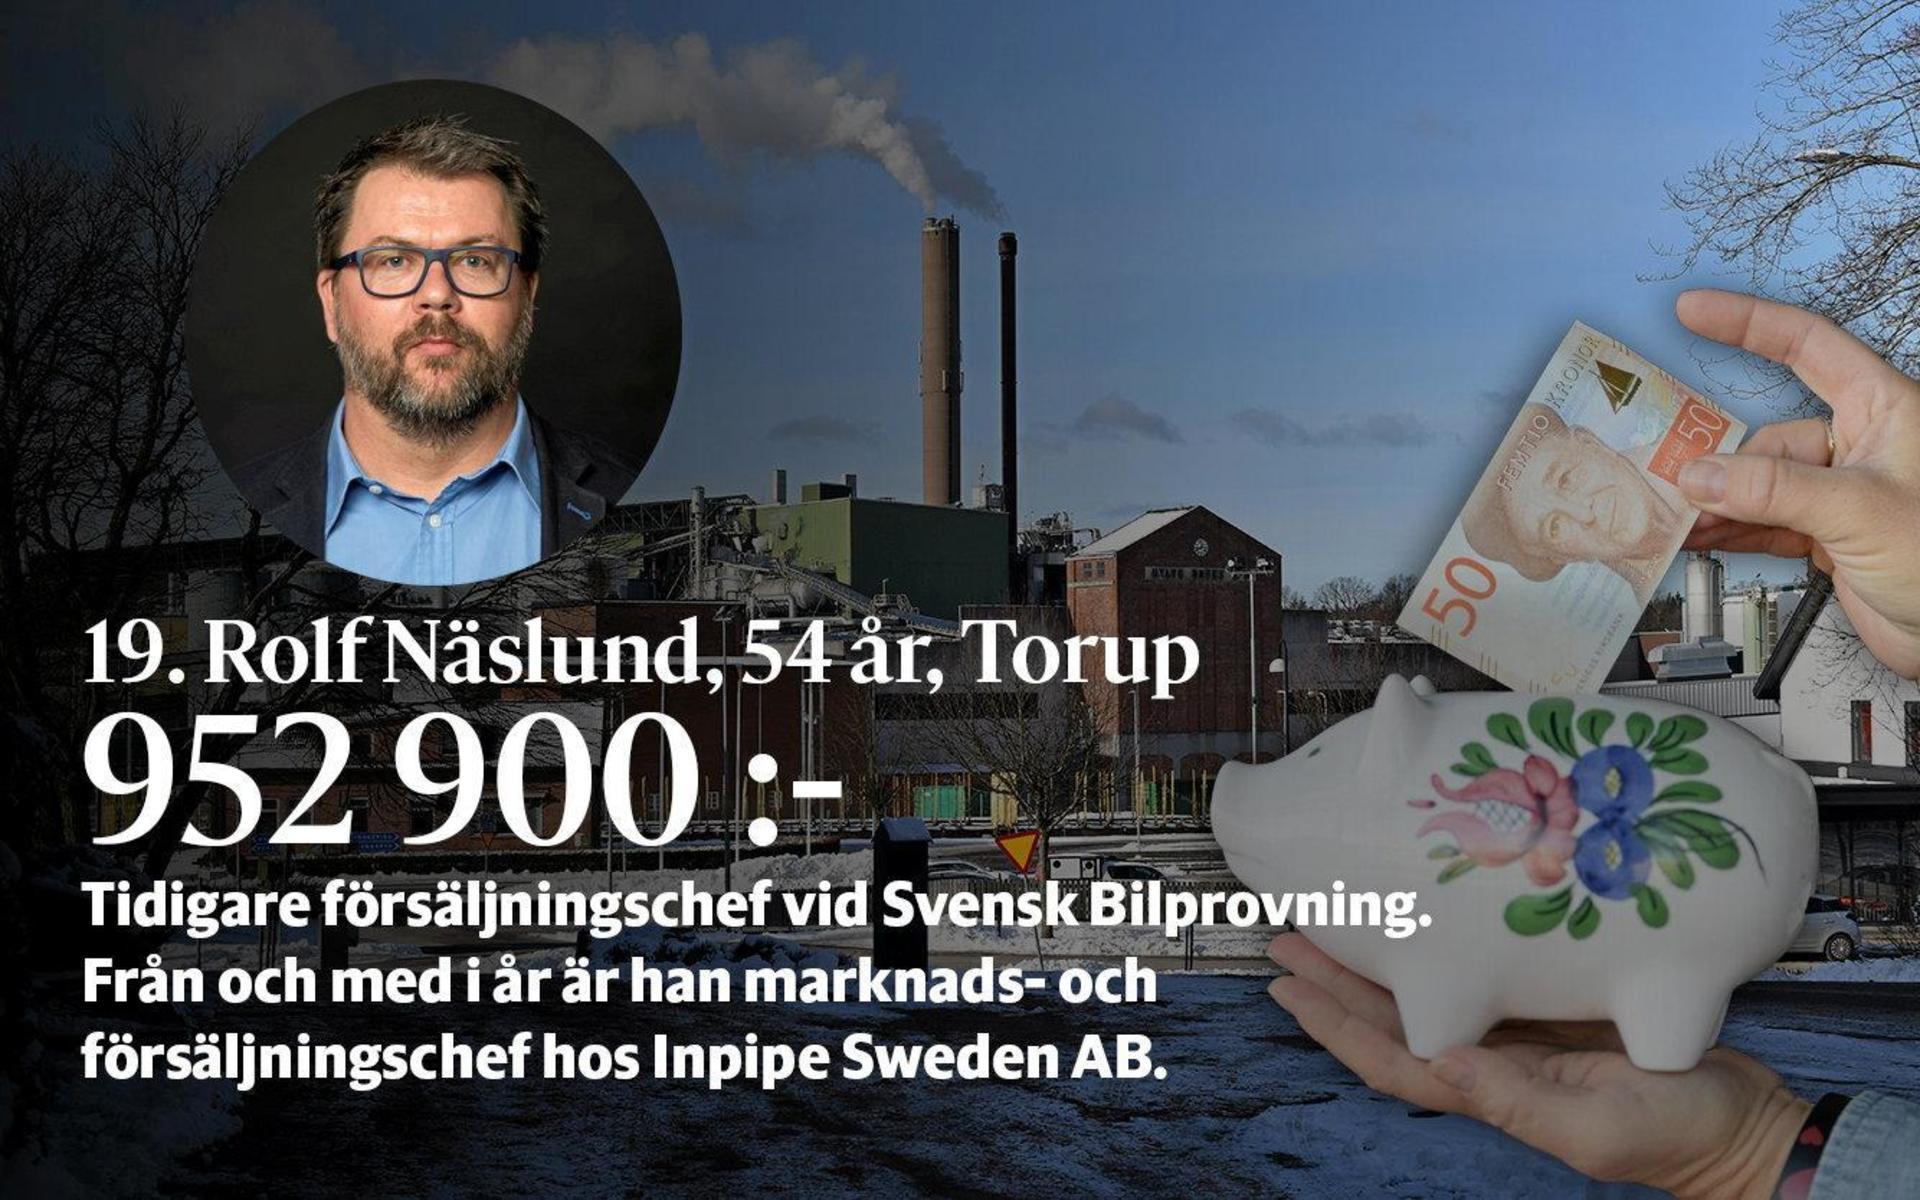 19. Rolf Näslund är han marknads- och försäljningschef hos Inpipe Sweden AB från och med i år. Innan dess var han försäljningschef vid Svensk Bilprovning.